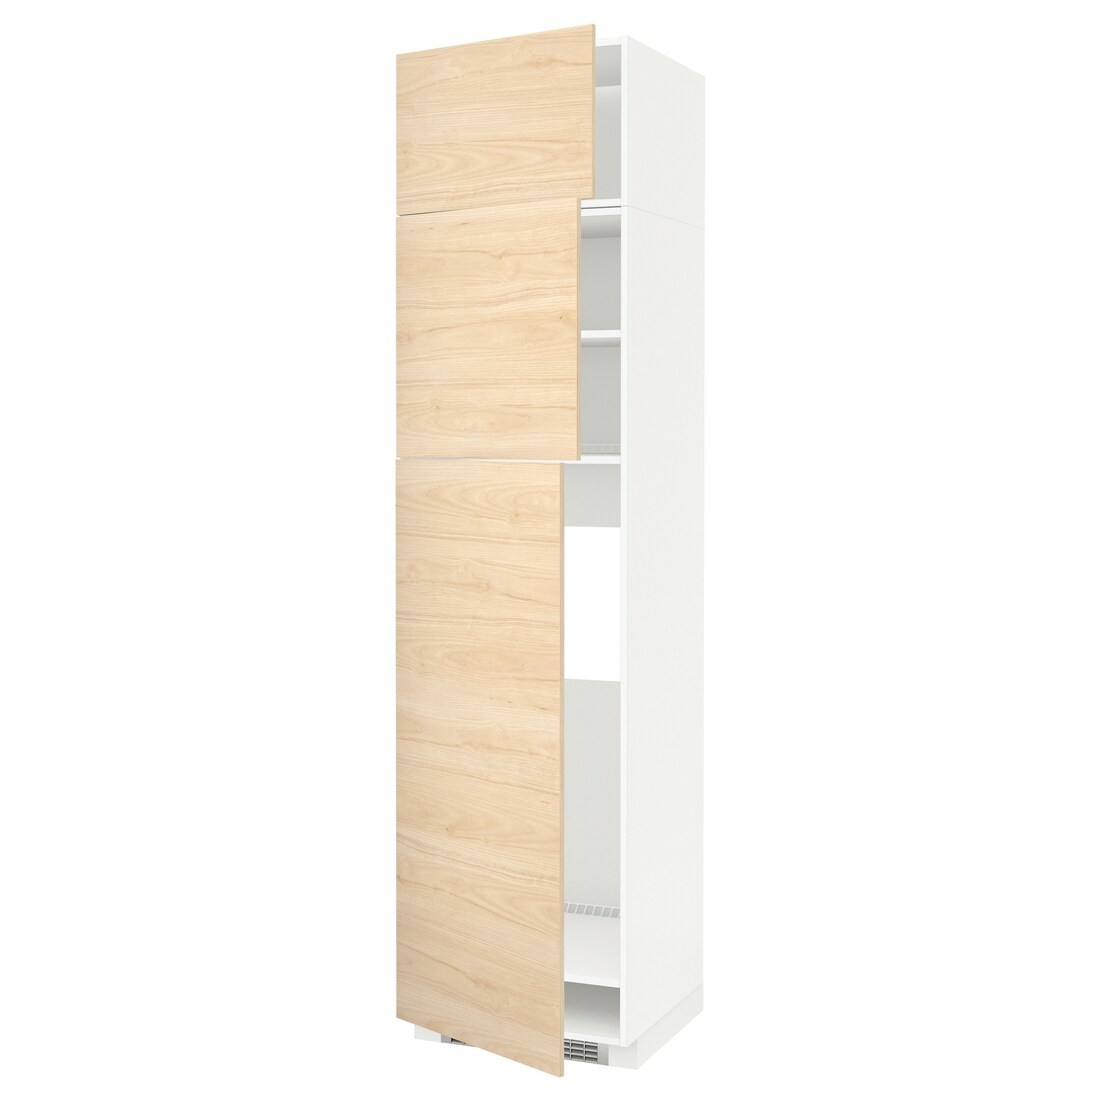 METOD МЕТОД Высокий шкаф для холодильника с 3 дверями, белый / Askersund узор светлый ясень, 60x60x240 см